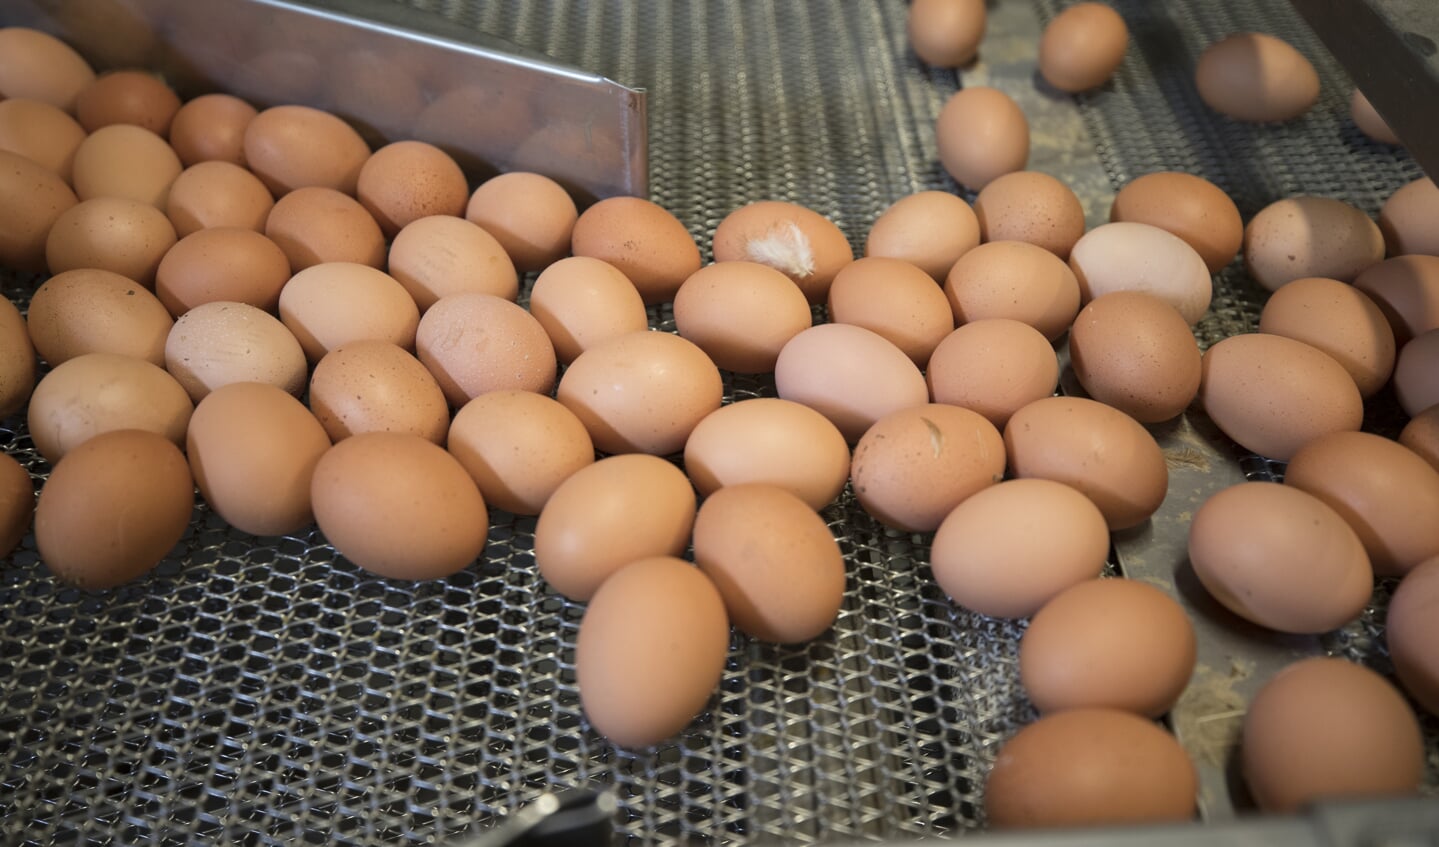 'Duurderde eieren leiden tot meer winst voor supermarkten.'